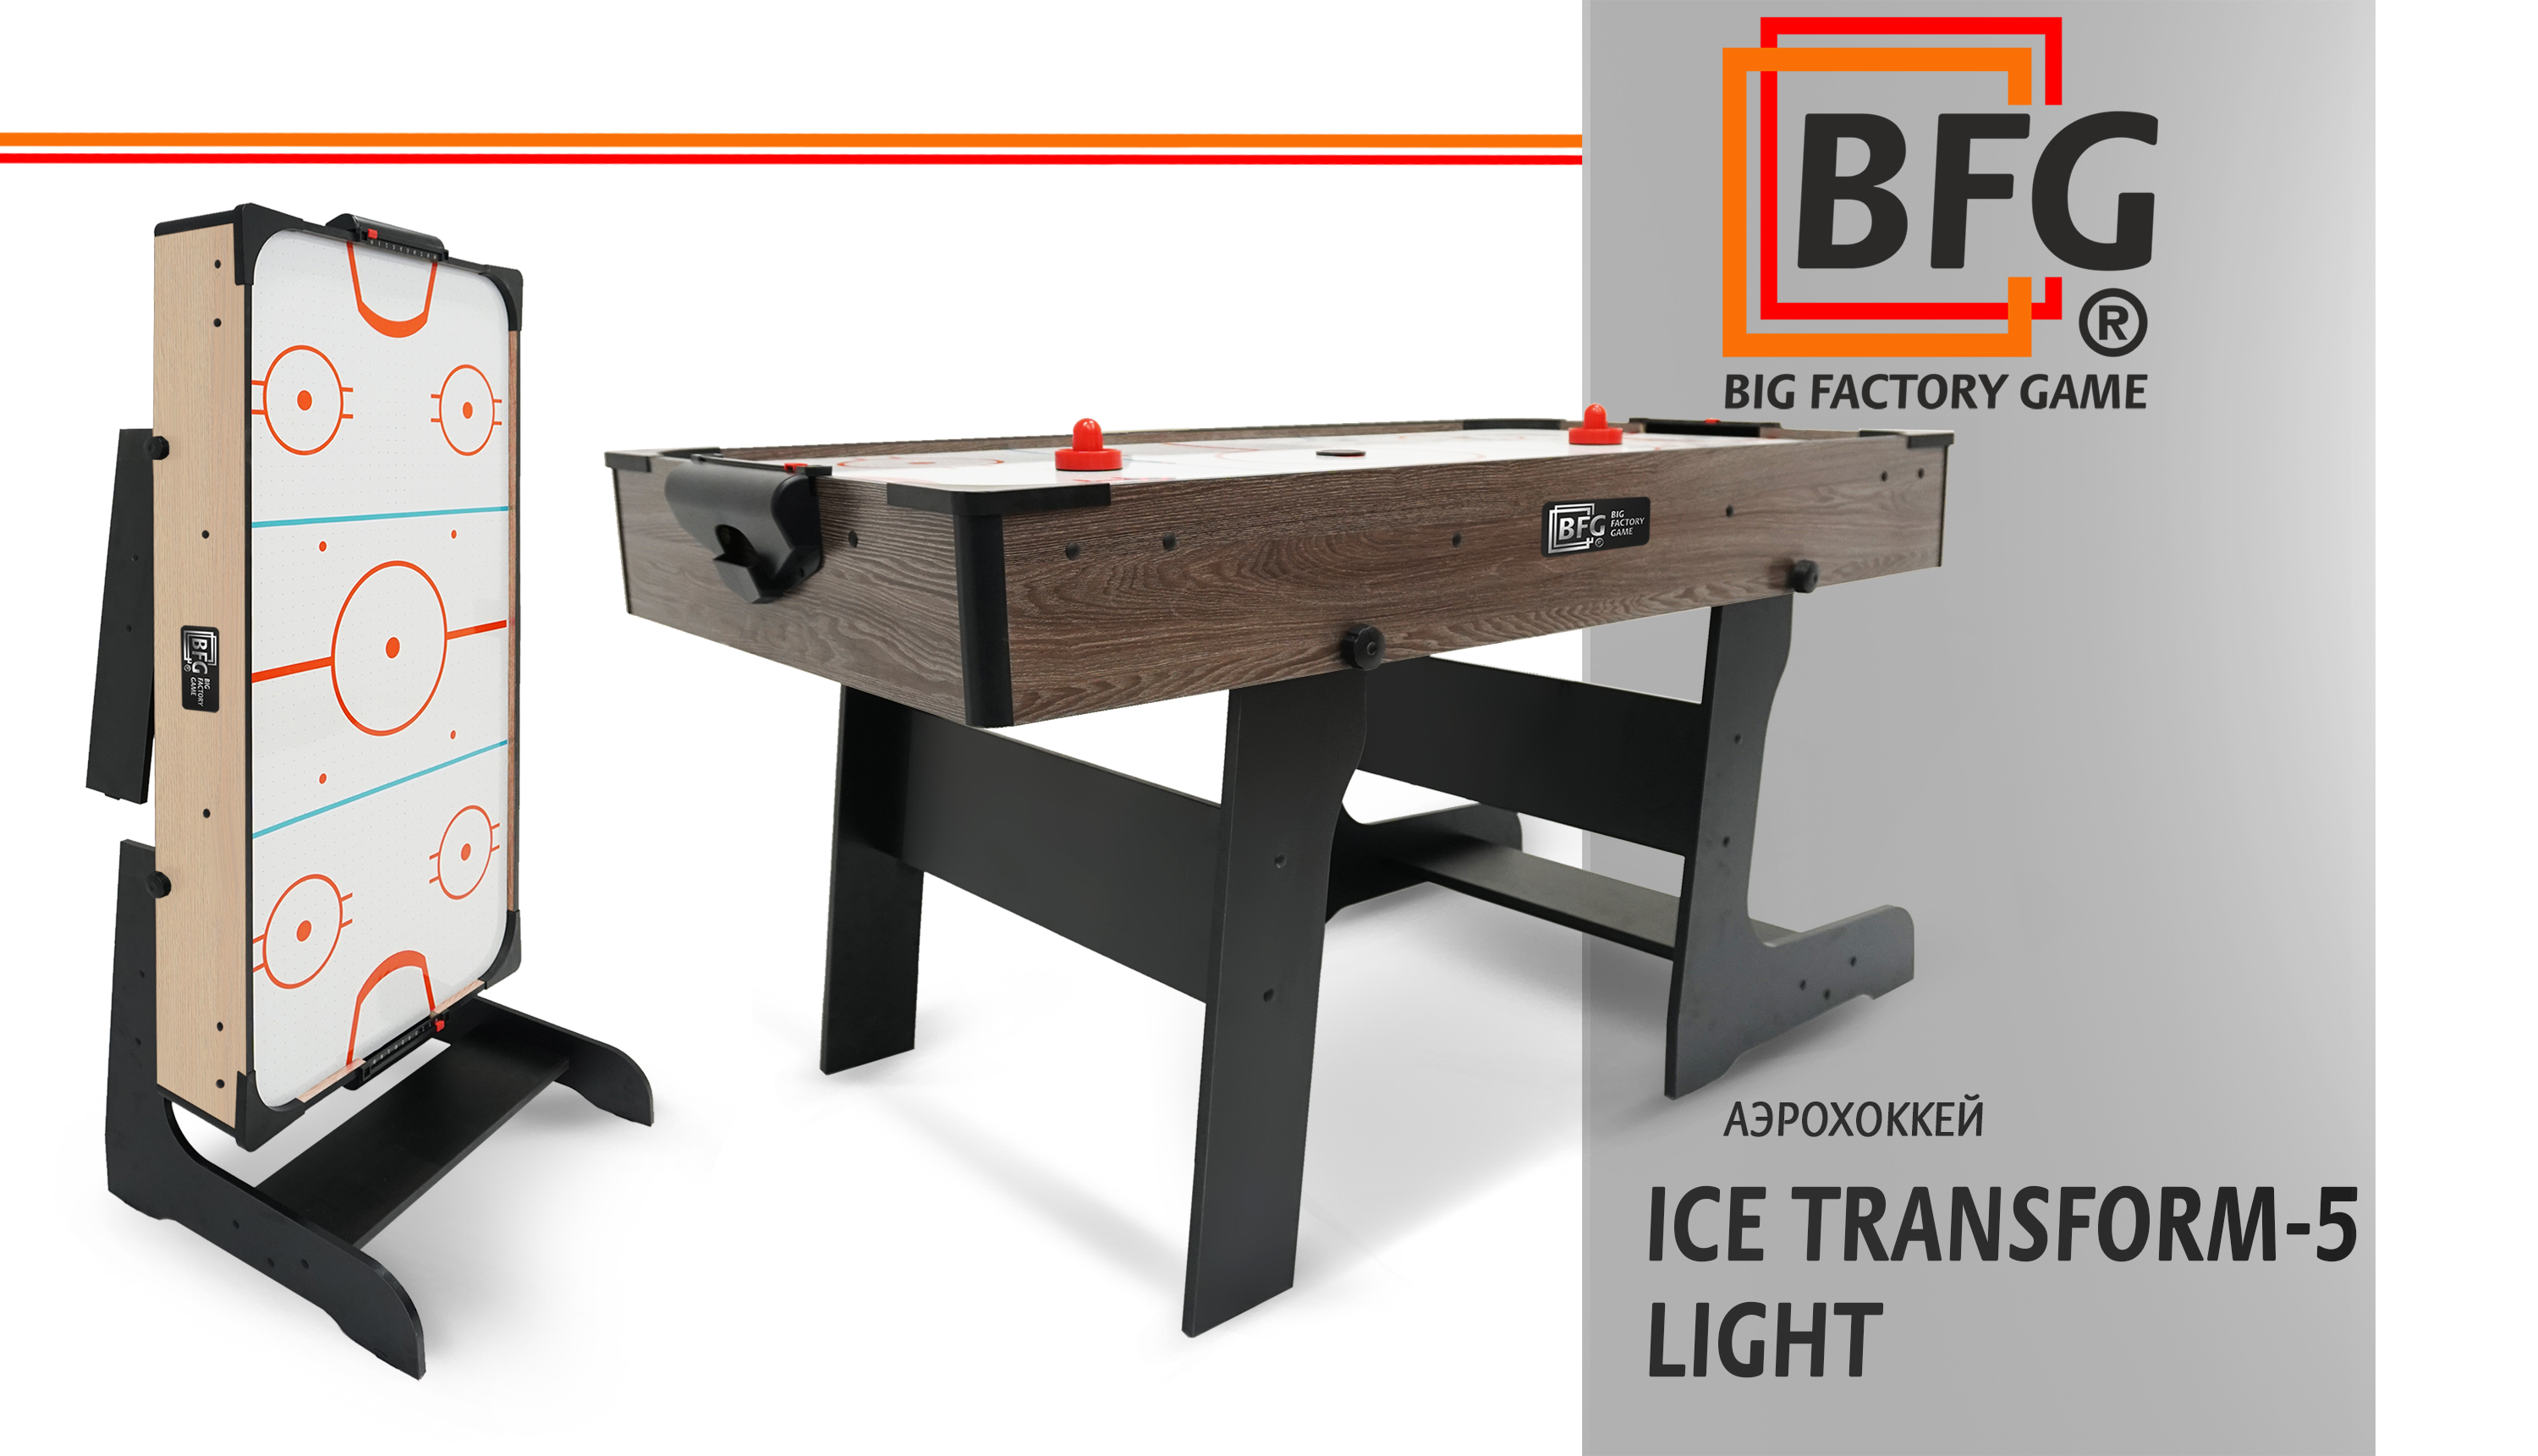 BFG-Ice-Transform-5-Light.jpg